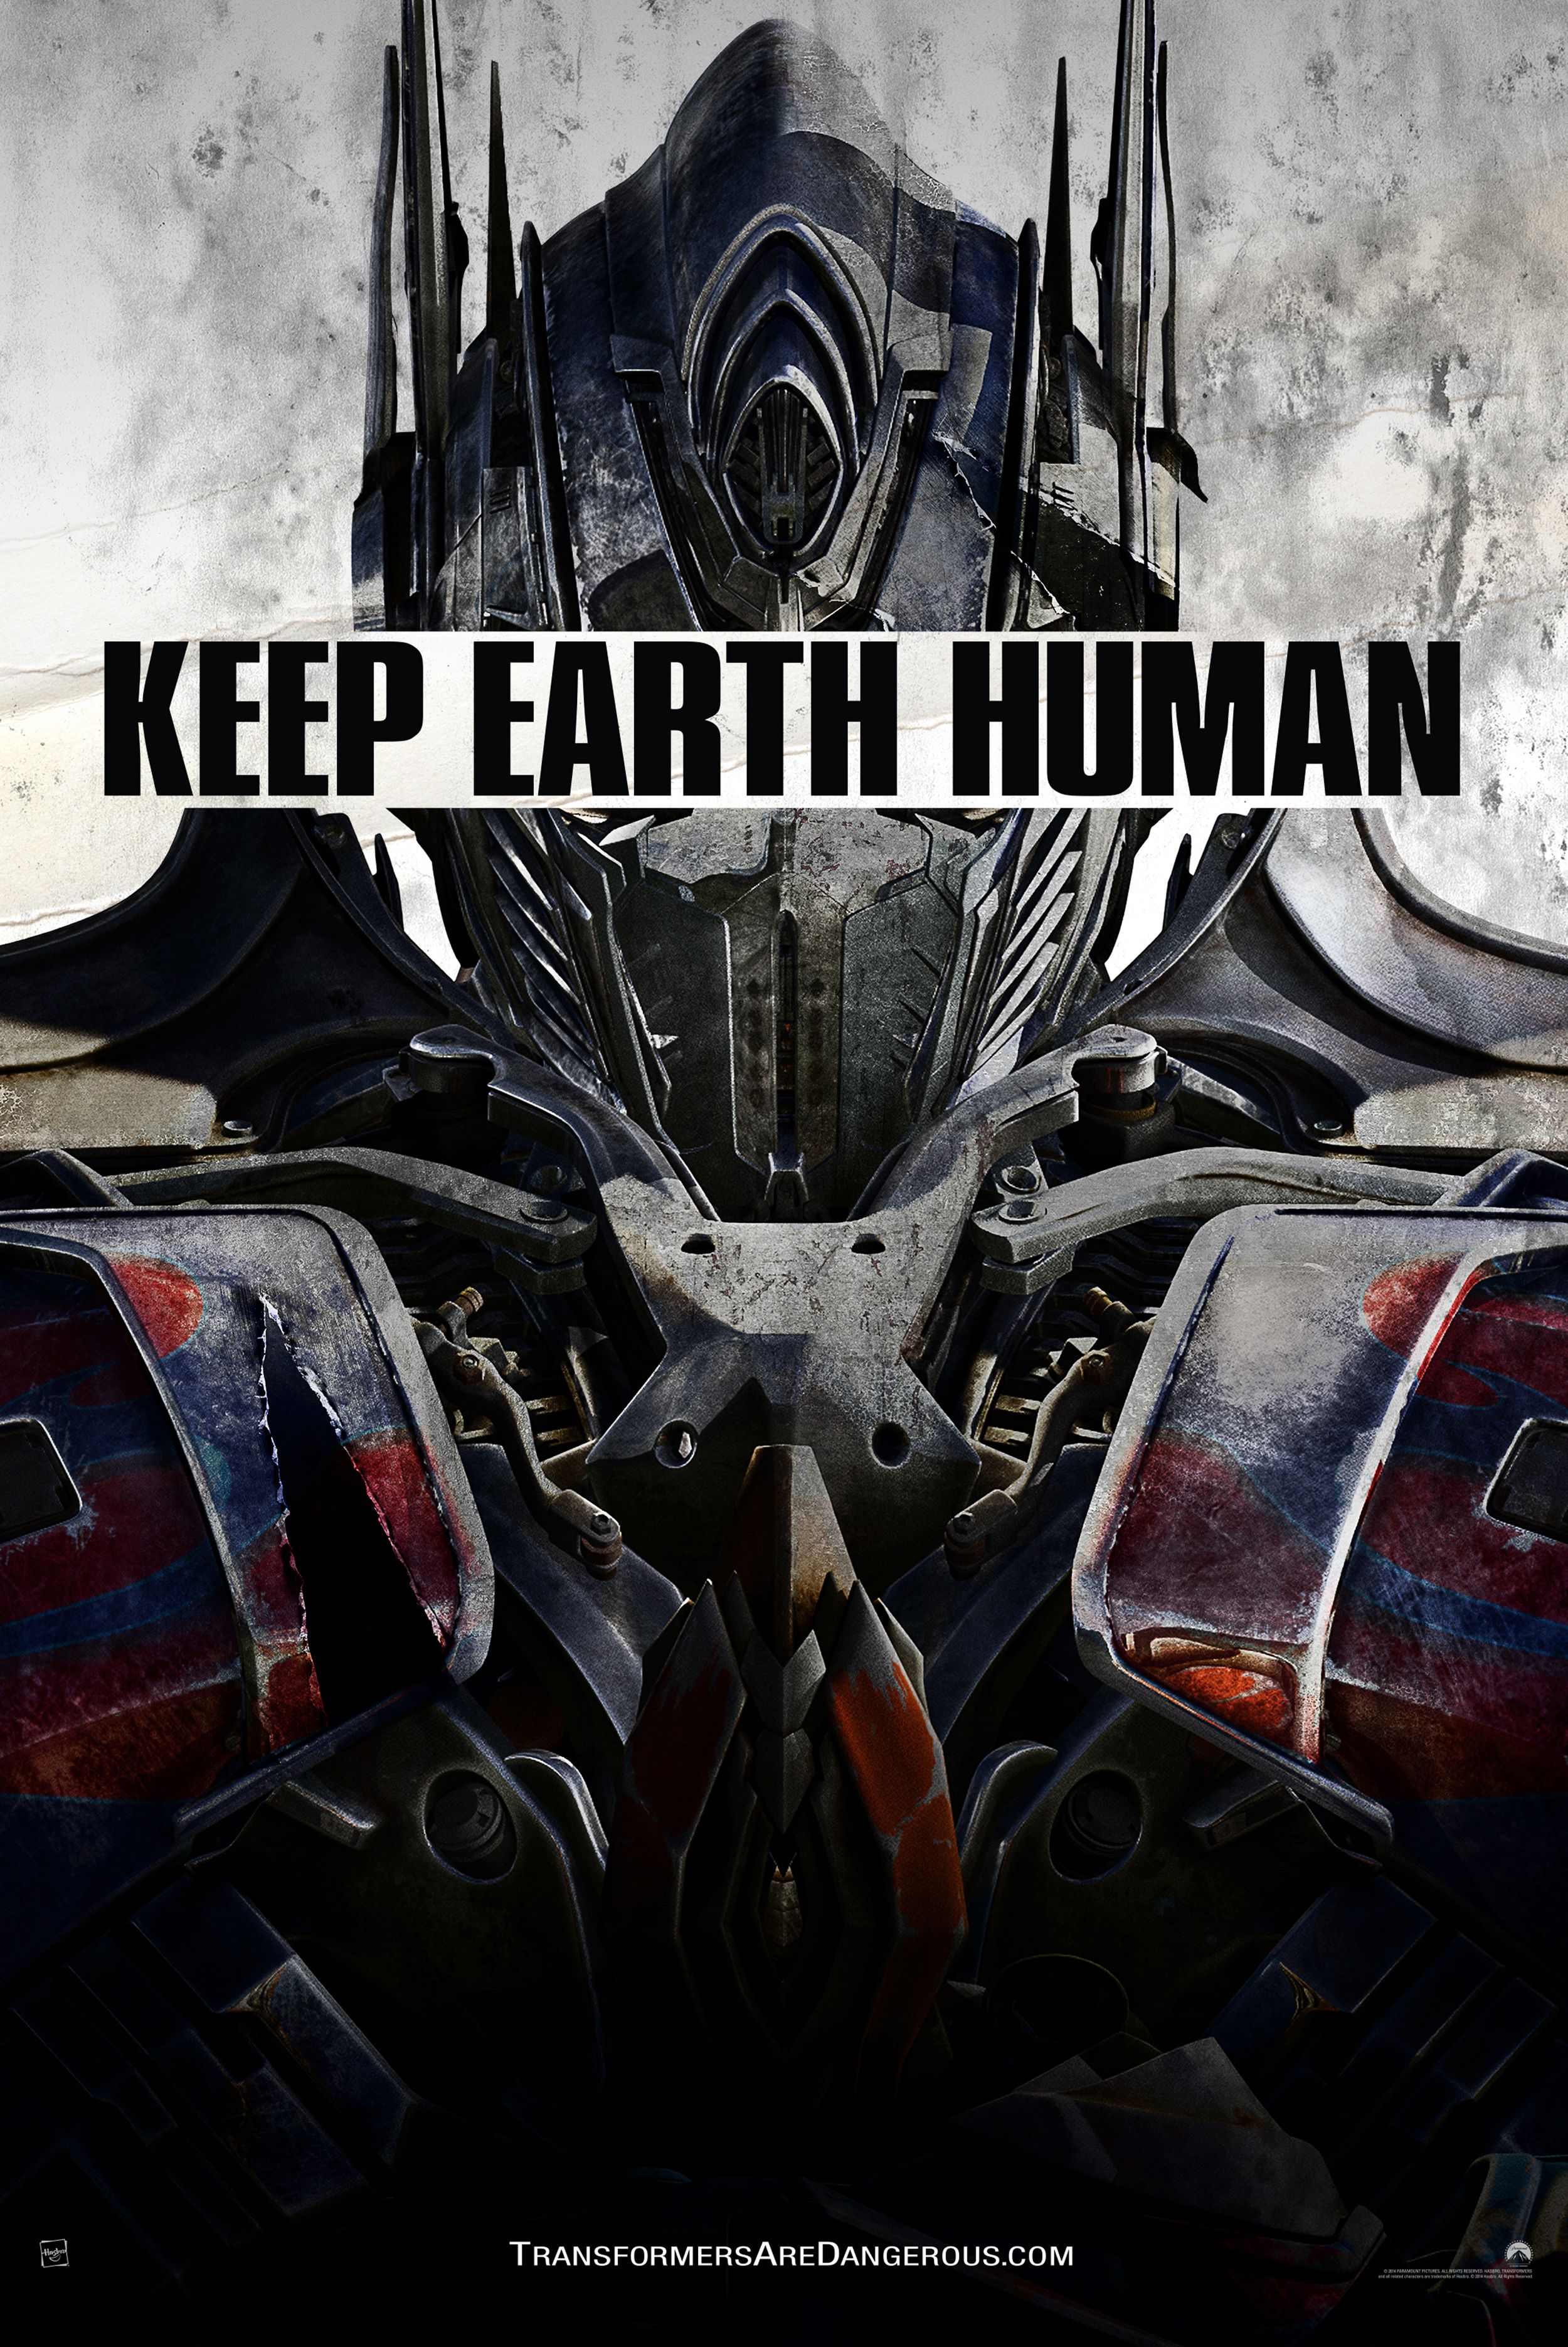 Transformers Age Of Extinction Poster 2014 by BTPosterDesign on DeviantArt